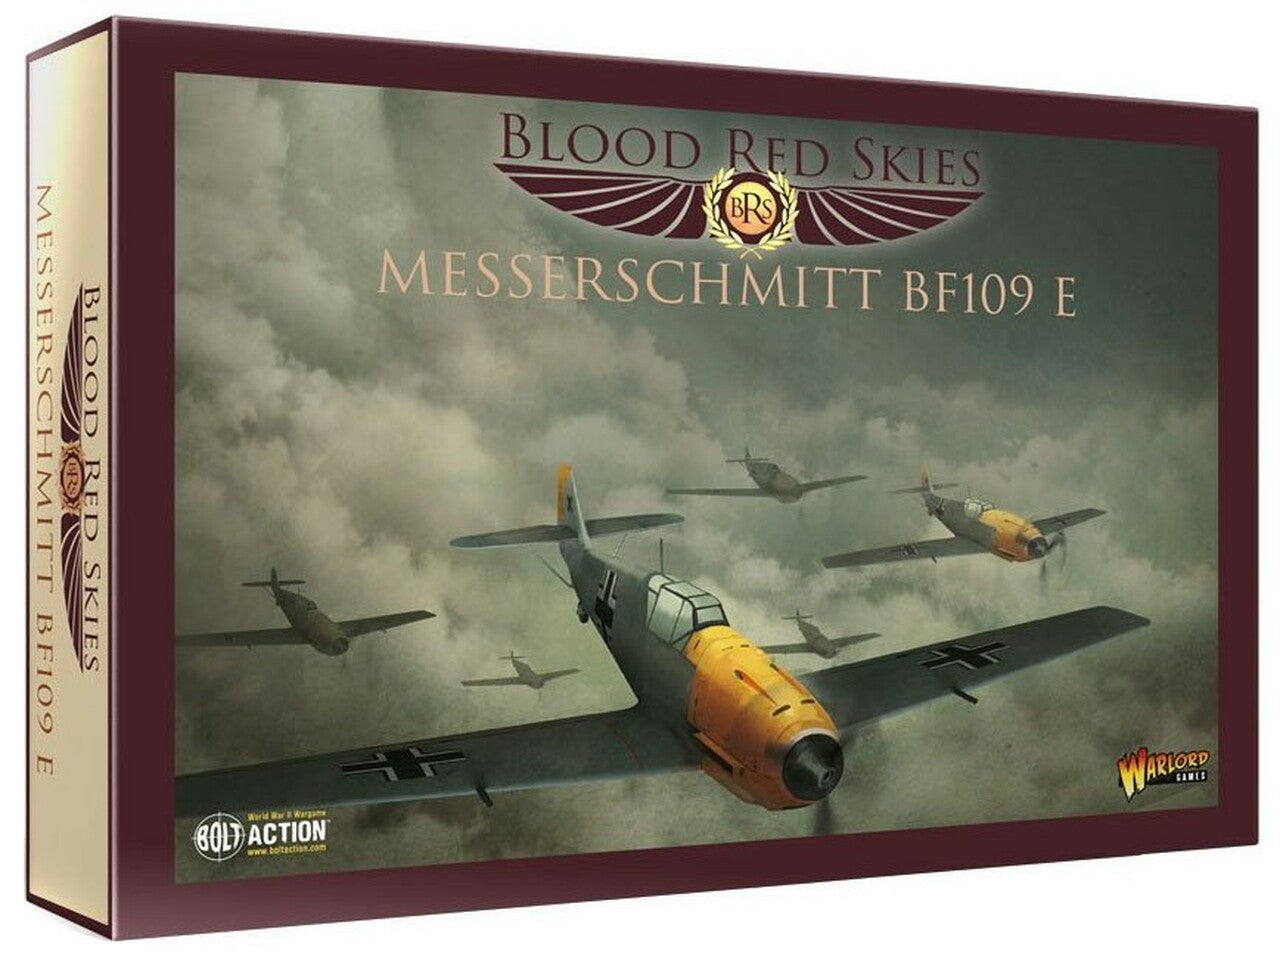 Blood Red Skies - Messerschmitt BF109 E